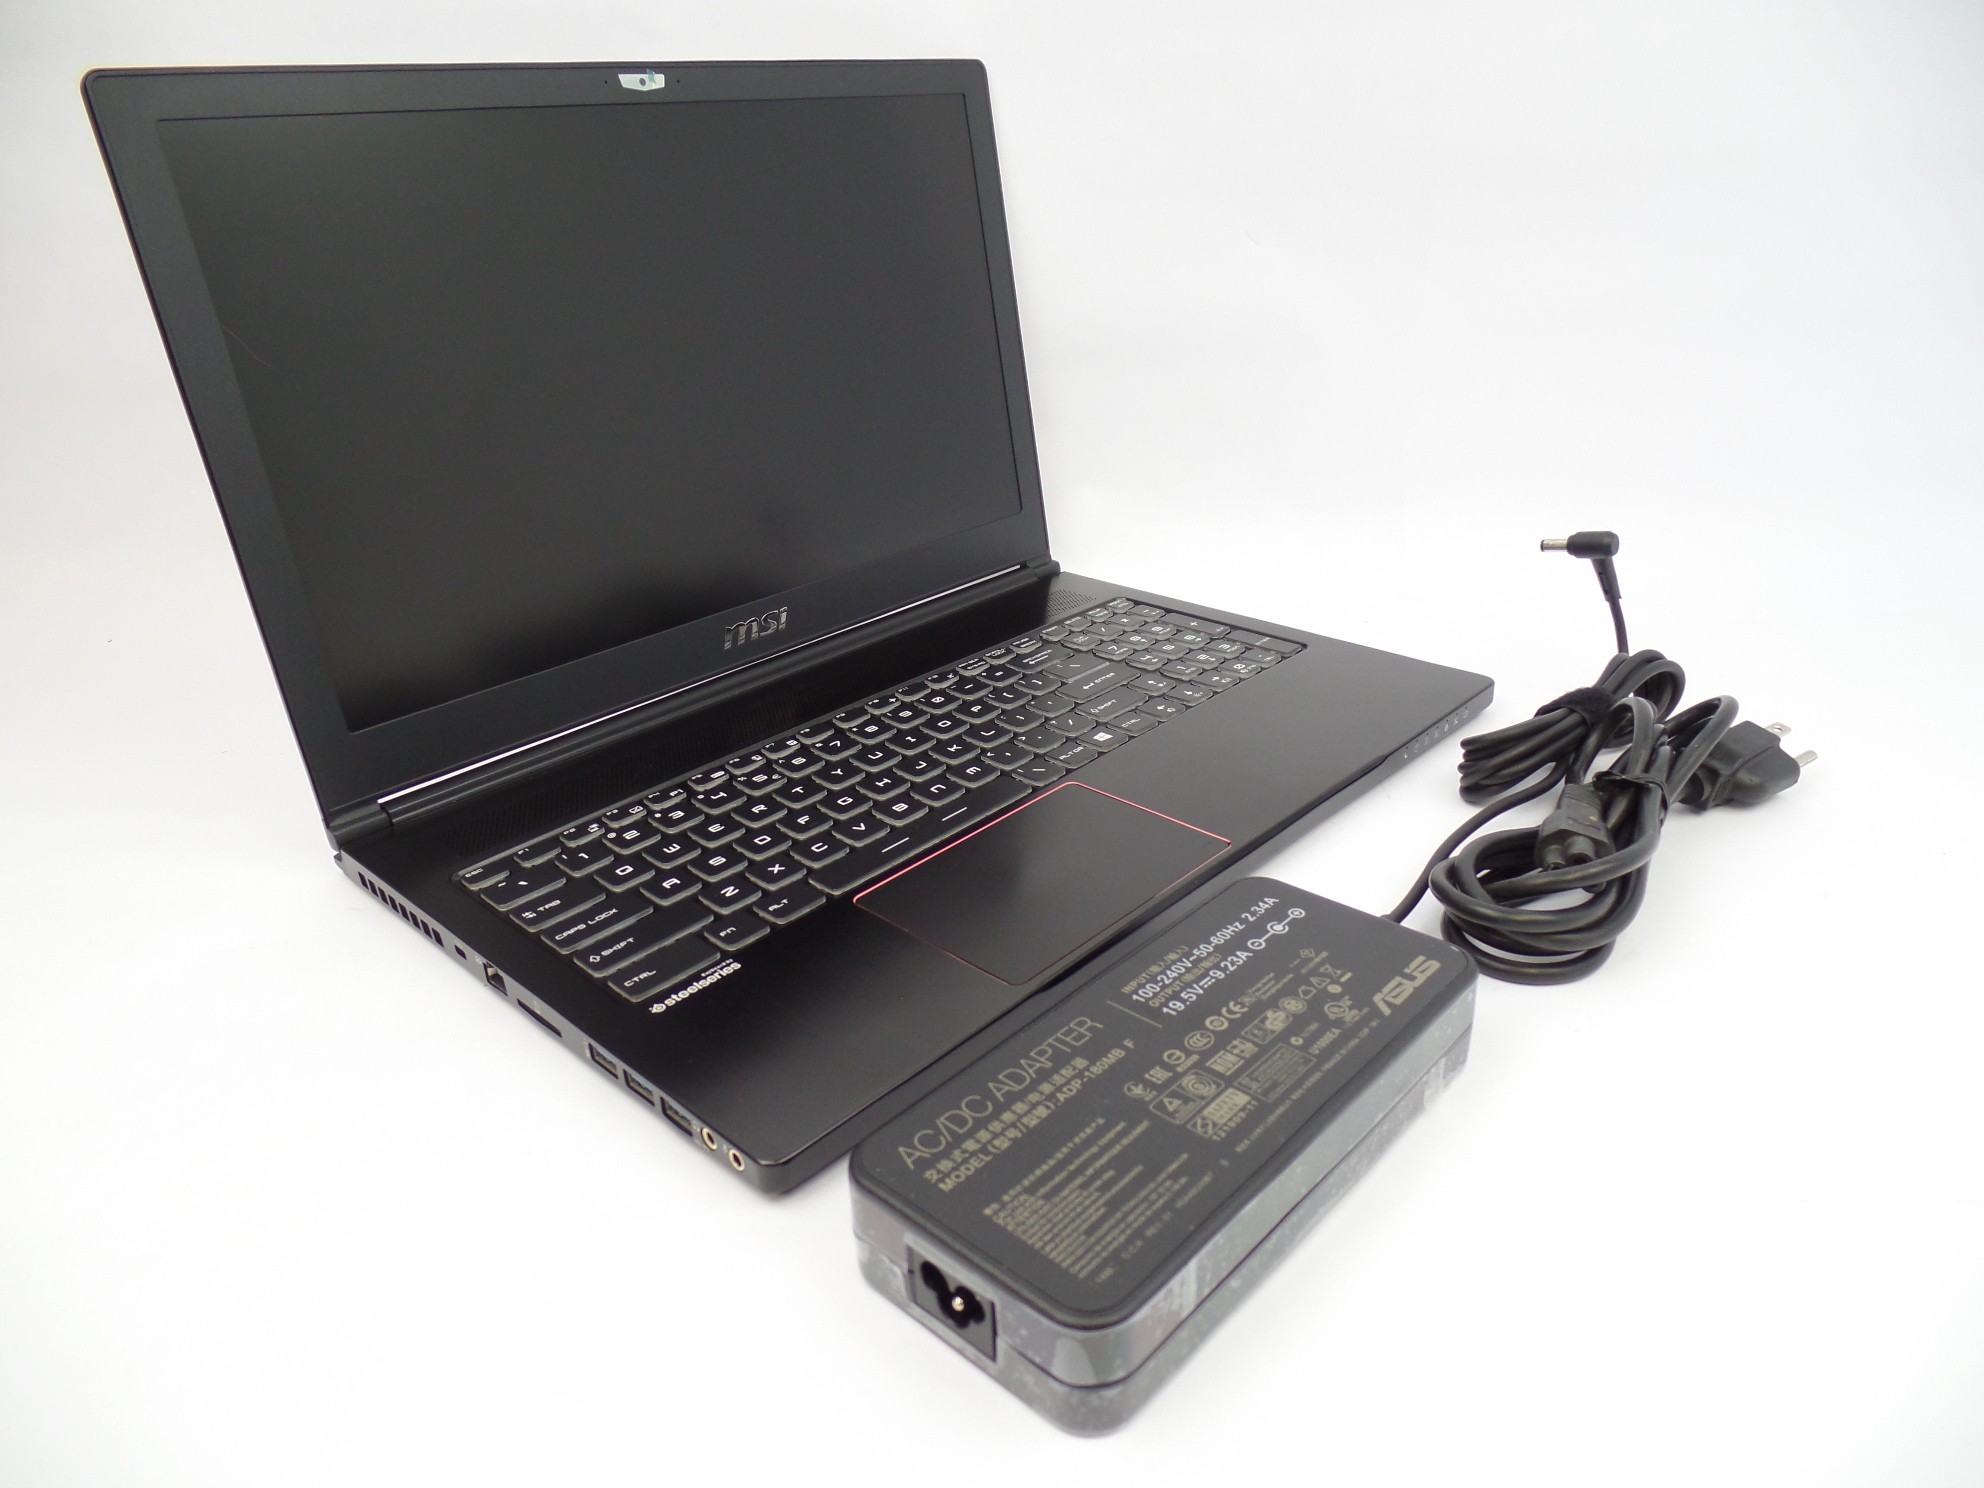 MSI GS63VR 7RF-252US 15.6" FHD i7-7700HQ 16GB 1TB 256GB GTX 1060 6GB W10 Laptop